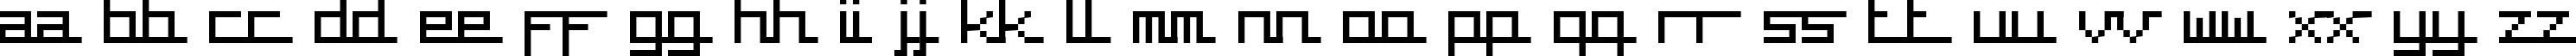 Пример написания английского алфавита шрифтом supercar cyr